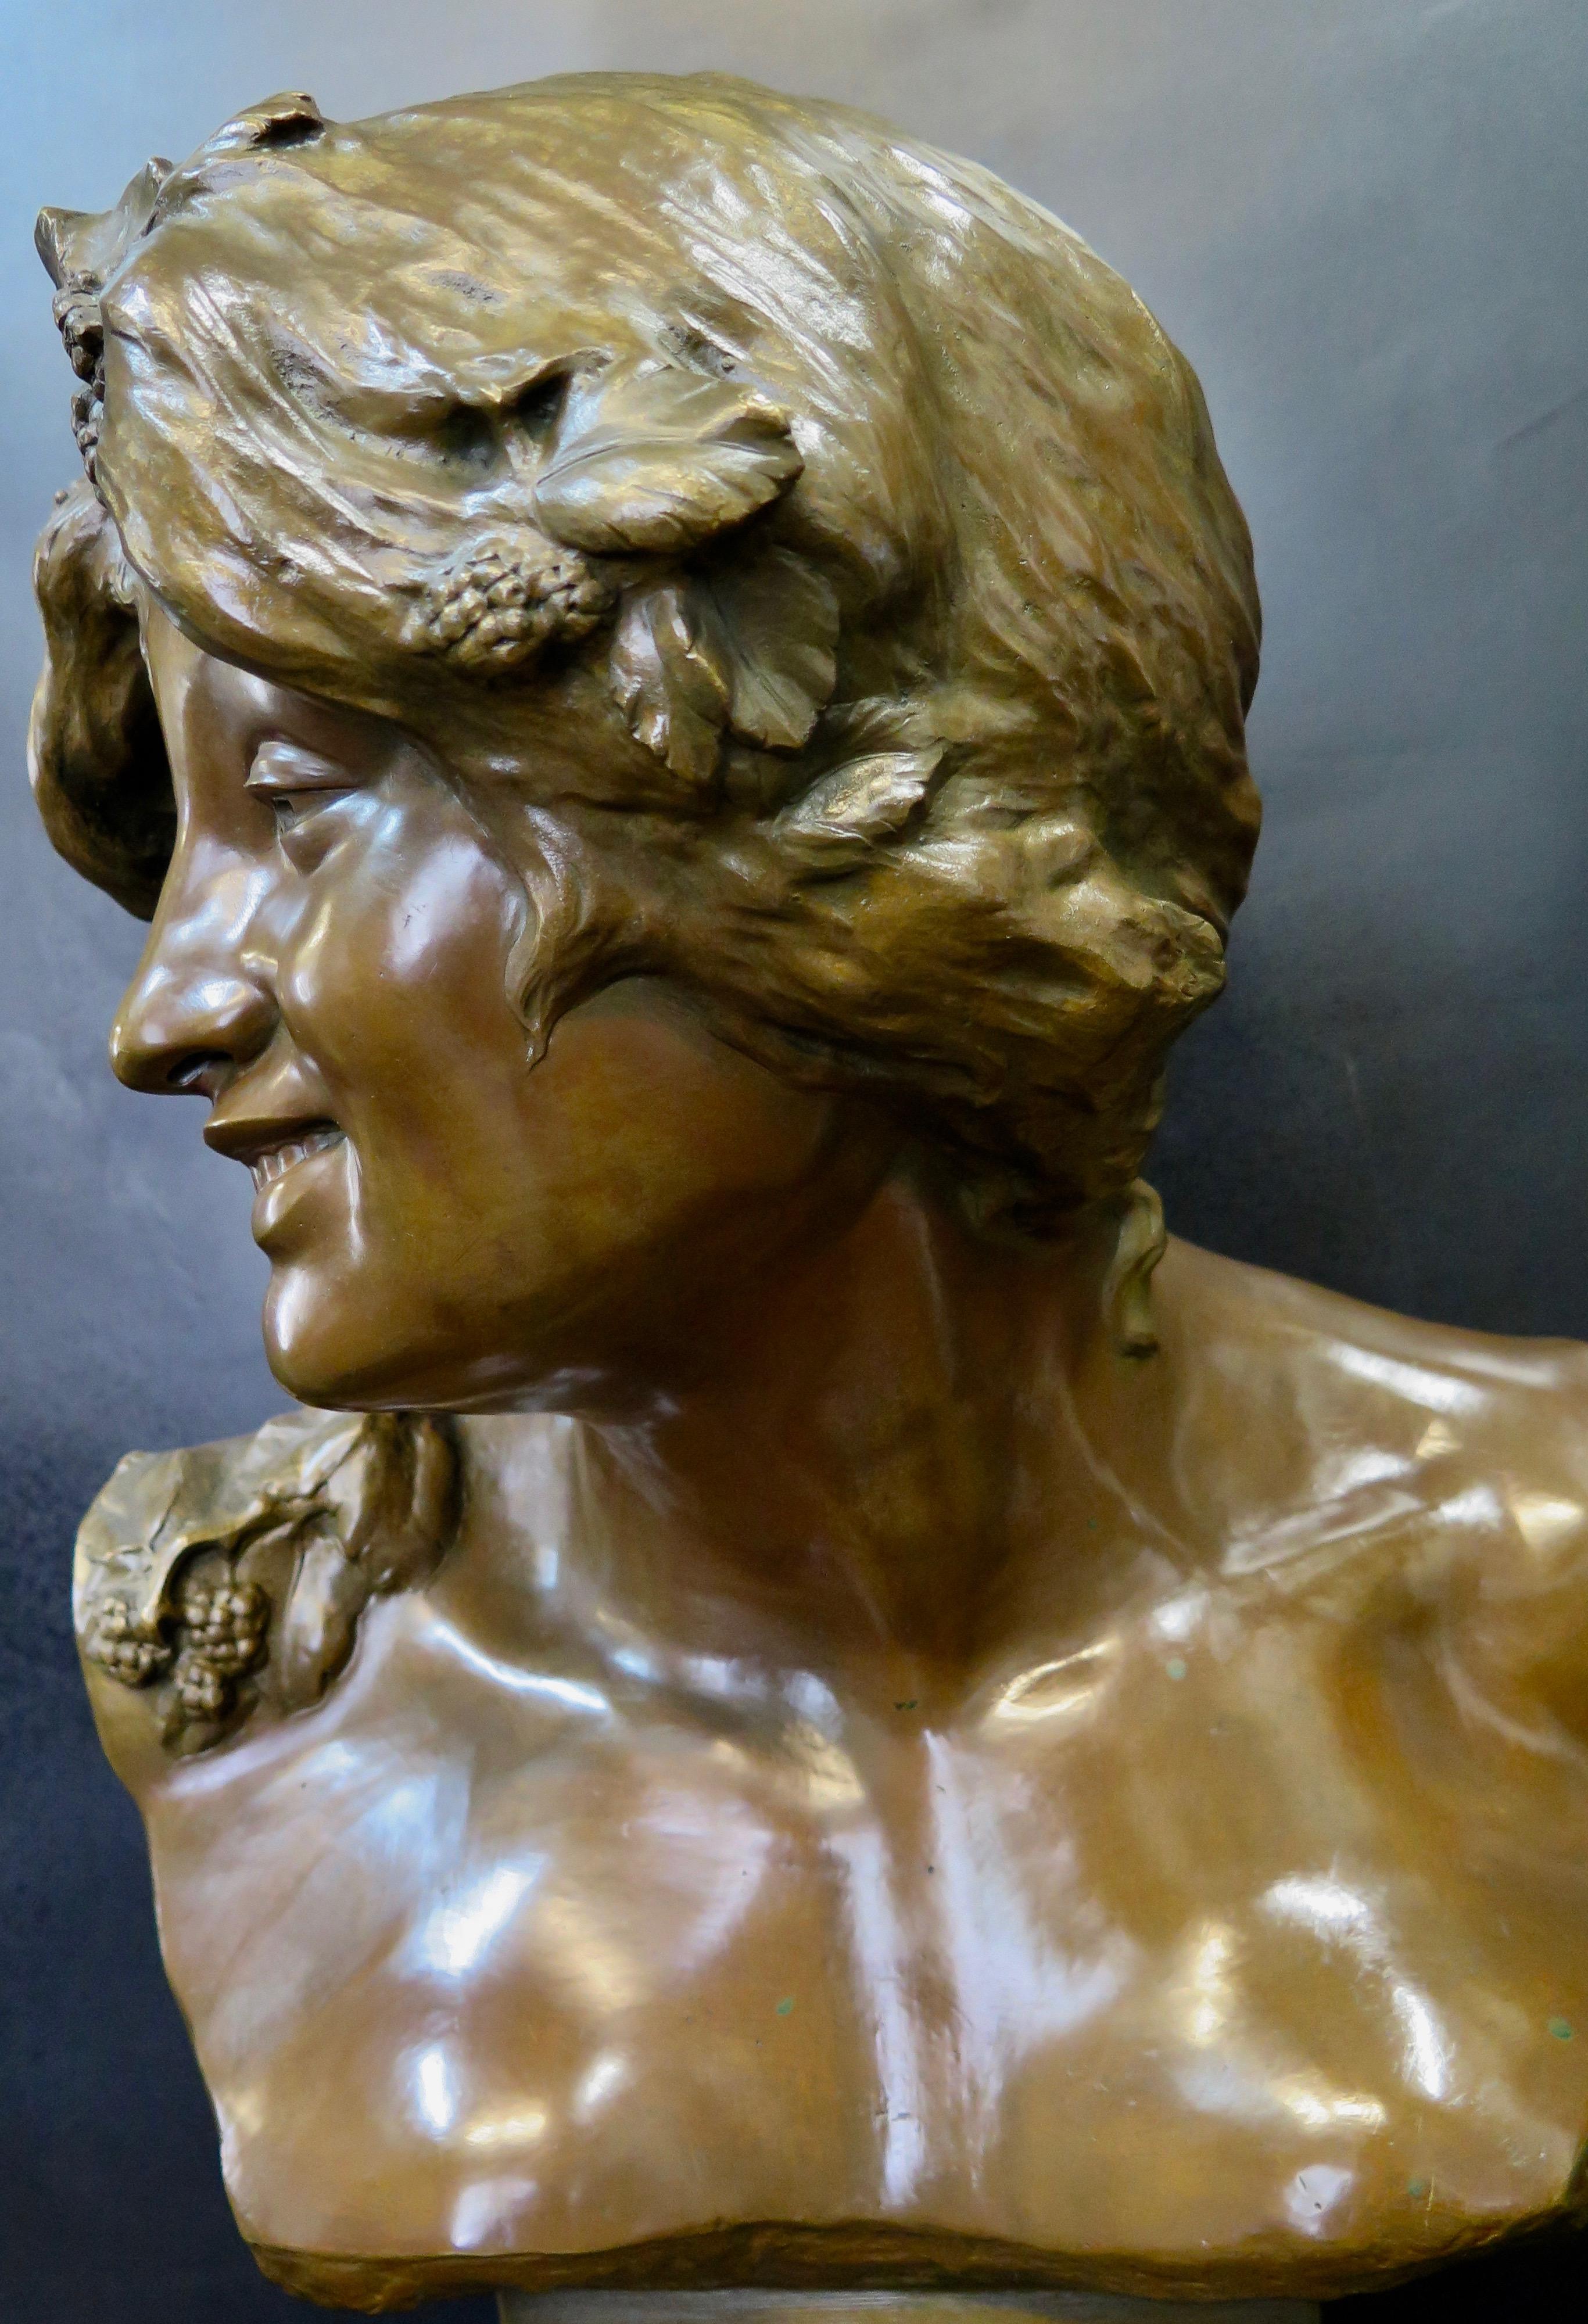 Dieses alte Kunstwerk aus dem 19. Jahrhundert ist eine außergewöhnlich detaillierte, reich patinierte Bronzeskulptur im Jugendstil. Es stellt die Göttin Persephone, die Königin der Unterwelt, dar, die aus ihrem irdischen Schlaf erwacht. Ihr Kopf ist